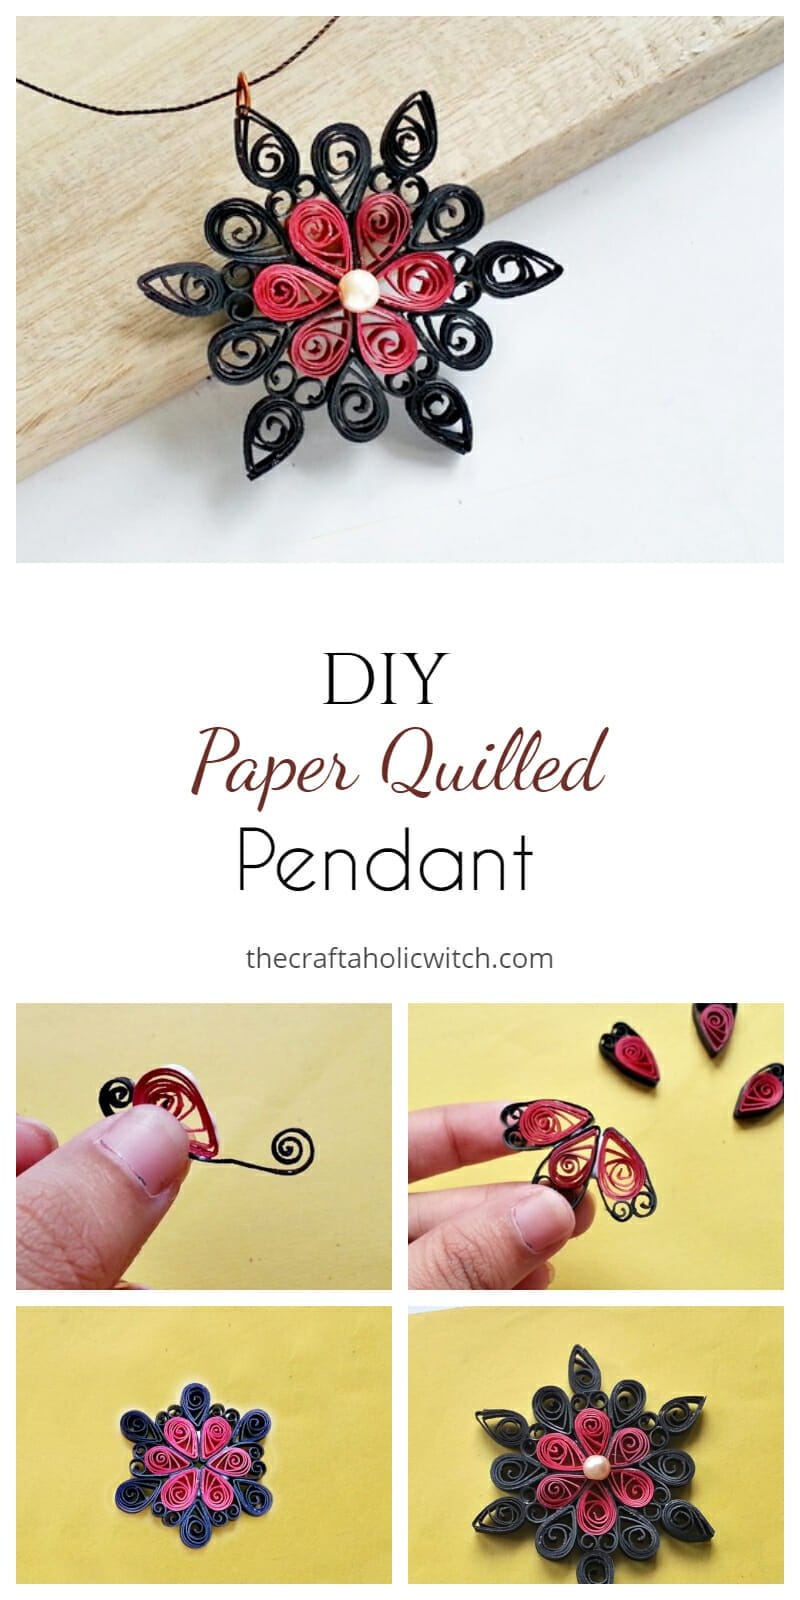 DIY Paper Quilled Pendant